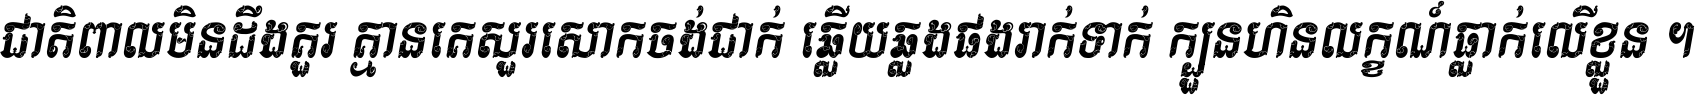 Kh Baphnom Vathana Italic